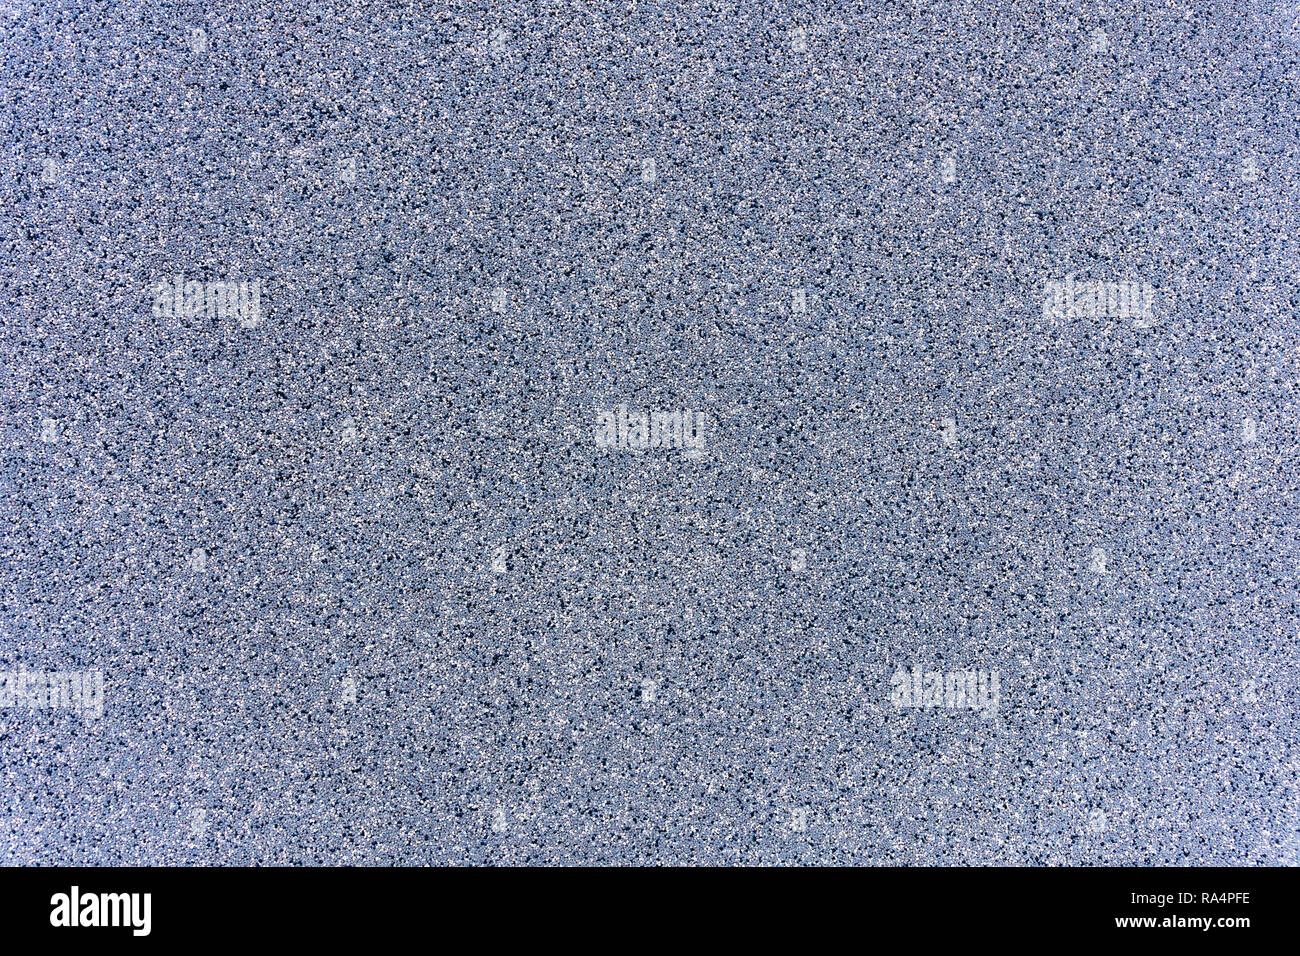 Un gros plan d'une surface de roche de granit gris traités plaque. Un fragment d'un mur de pierre de décoration. La texture du matériau granit gris lumineux. Banque D'Images